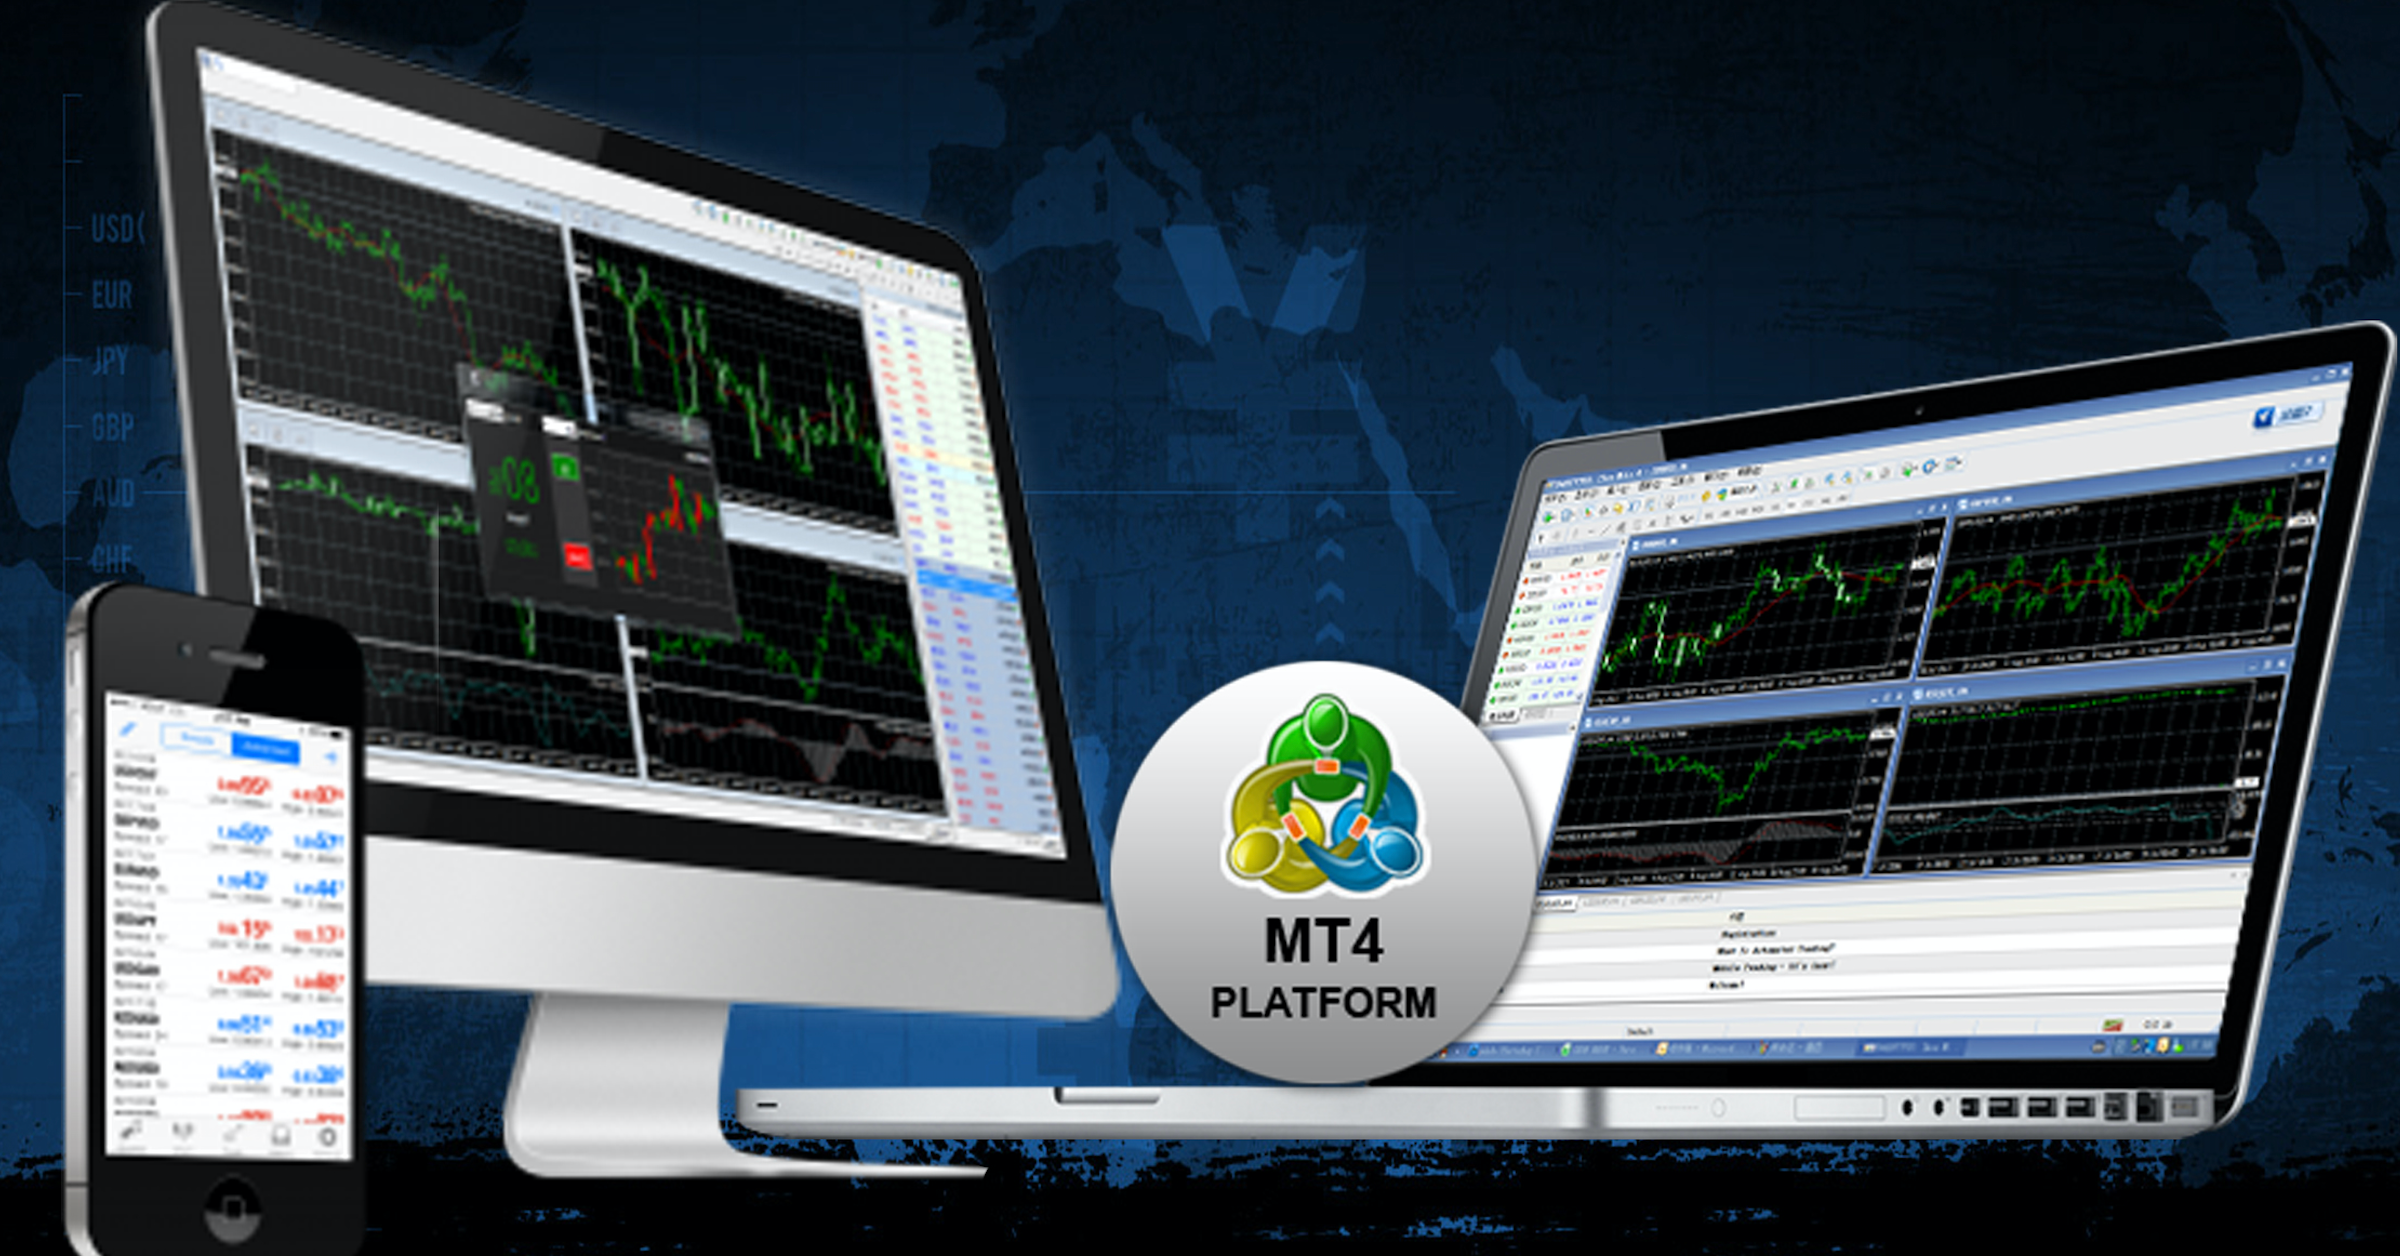 Cách sử dụng MT4 cho Trader mới - Phần 1: Các cửa sổ chính